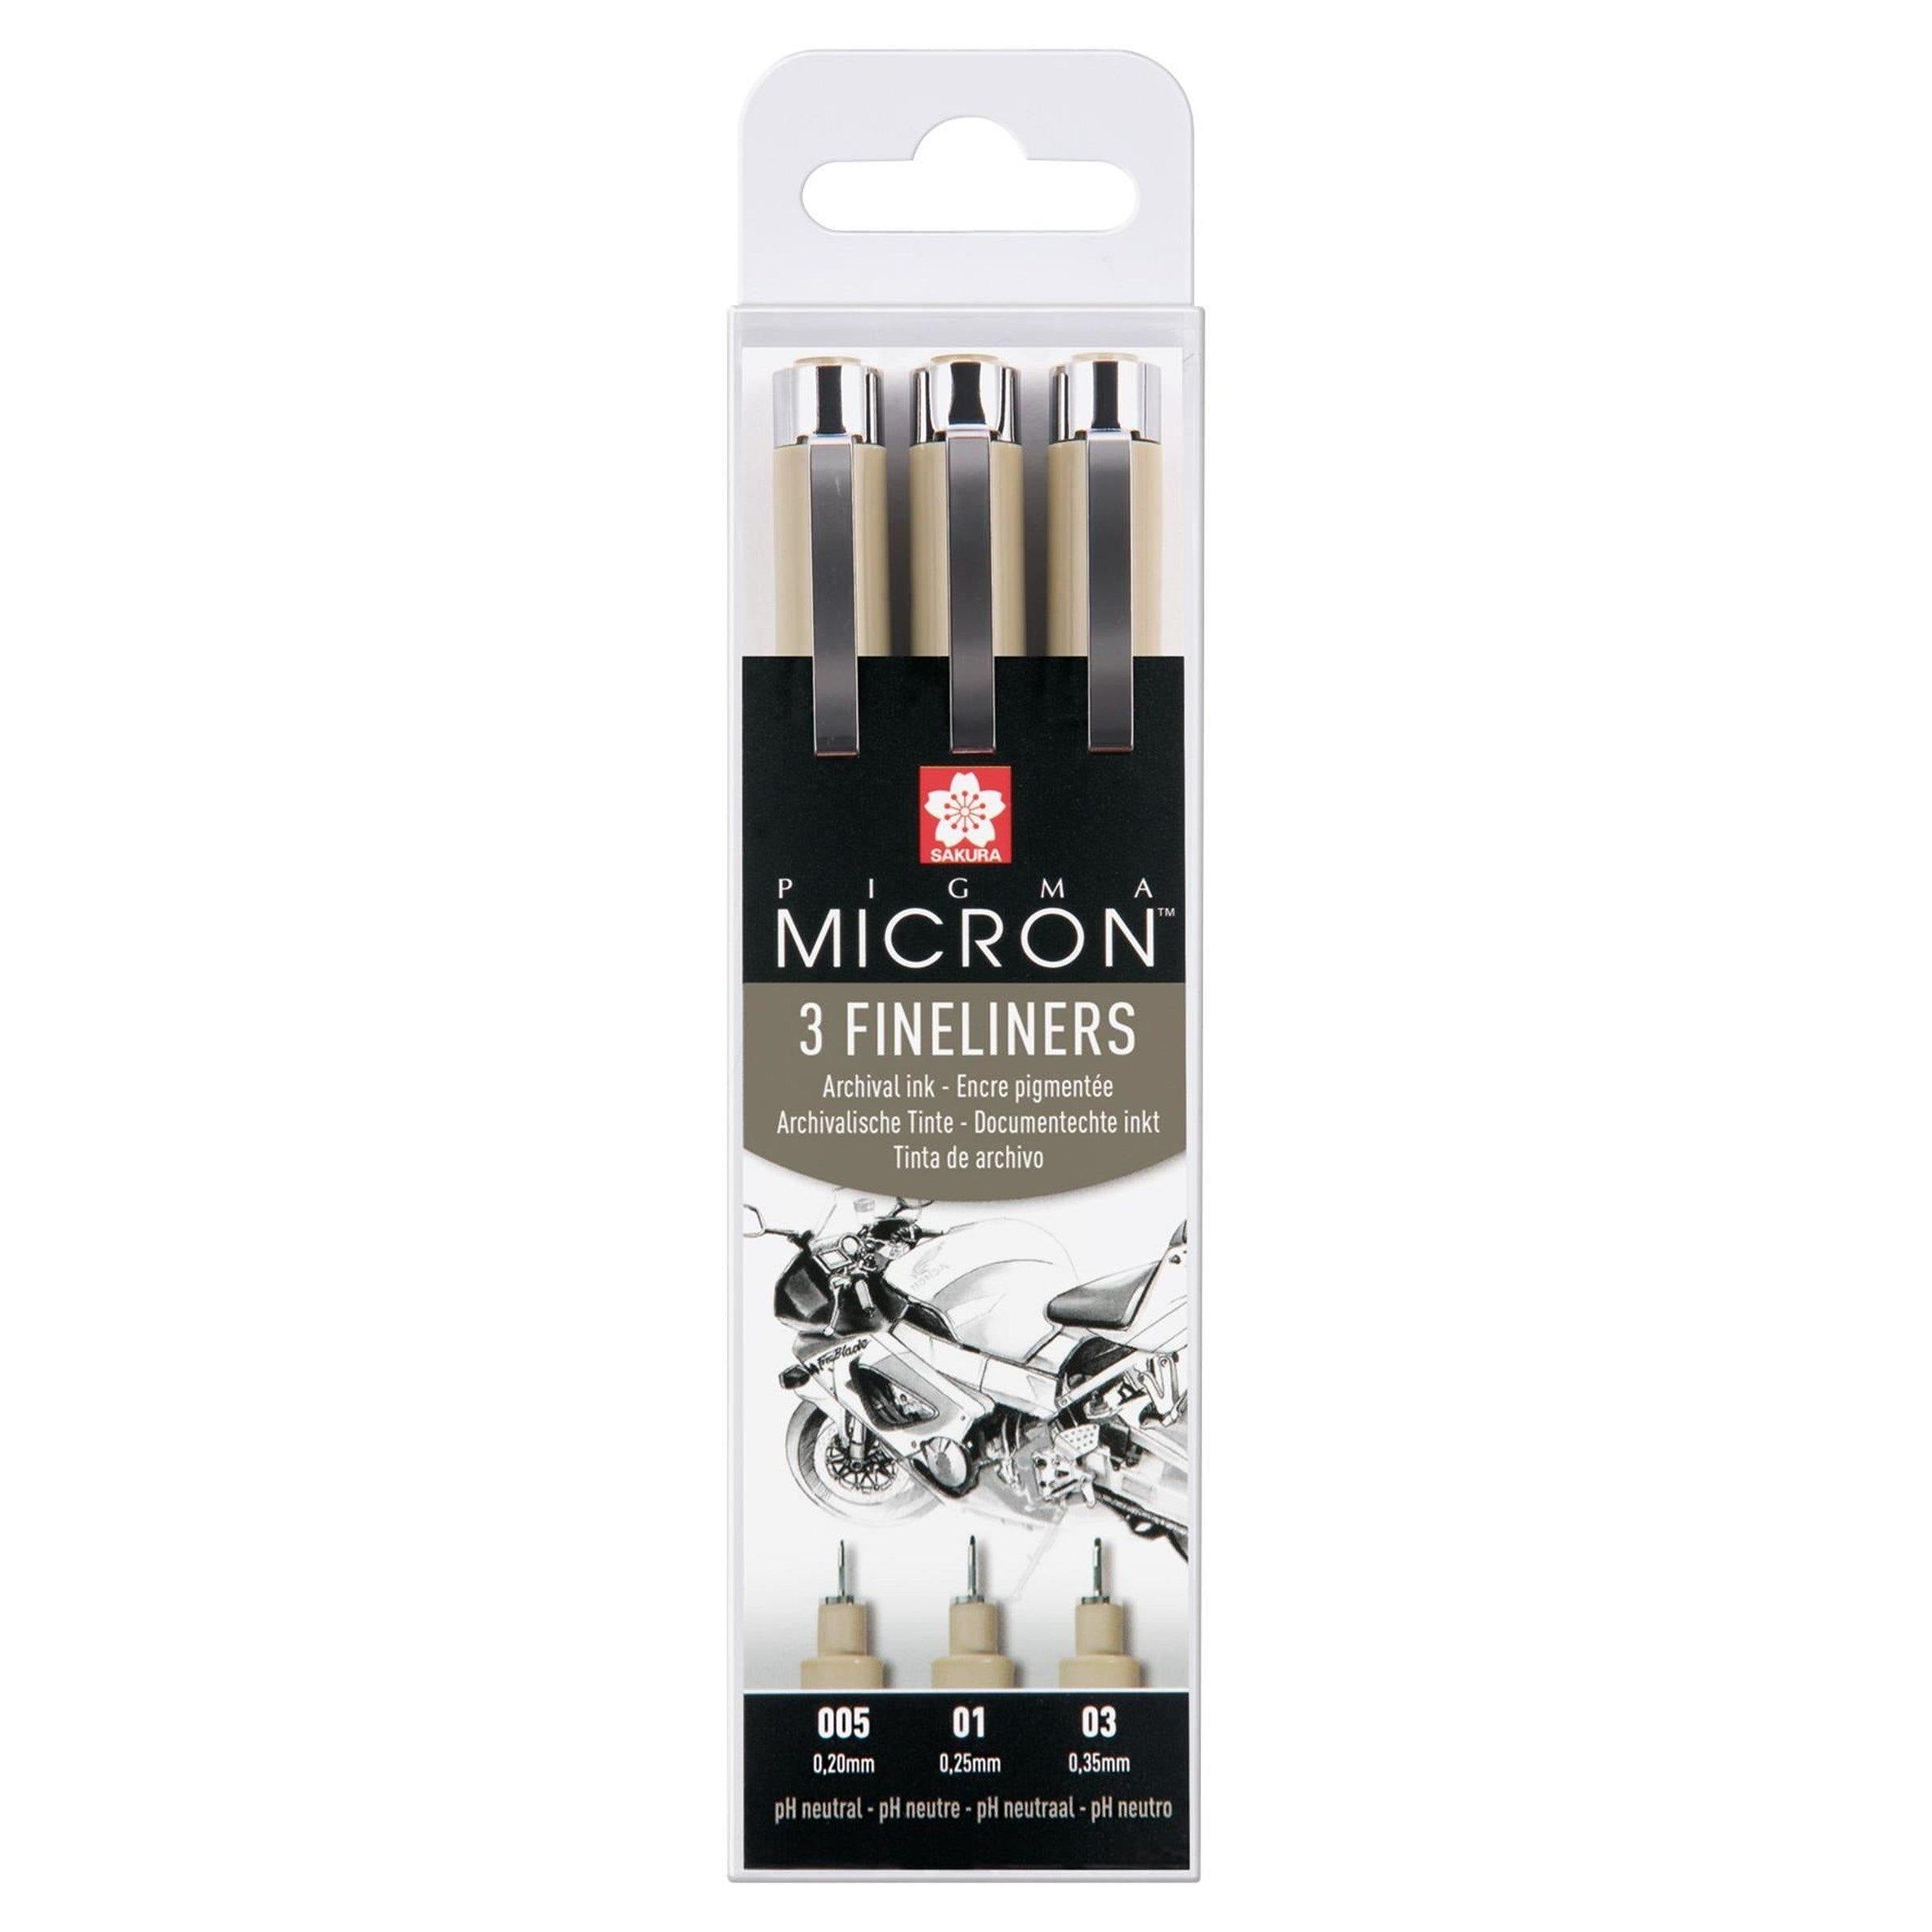 Sakura Pigma Micron - Pigment Fineliner Pens - 01/03/05/08/10/12 - Wallet  of 6 - Black Ink